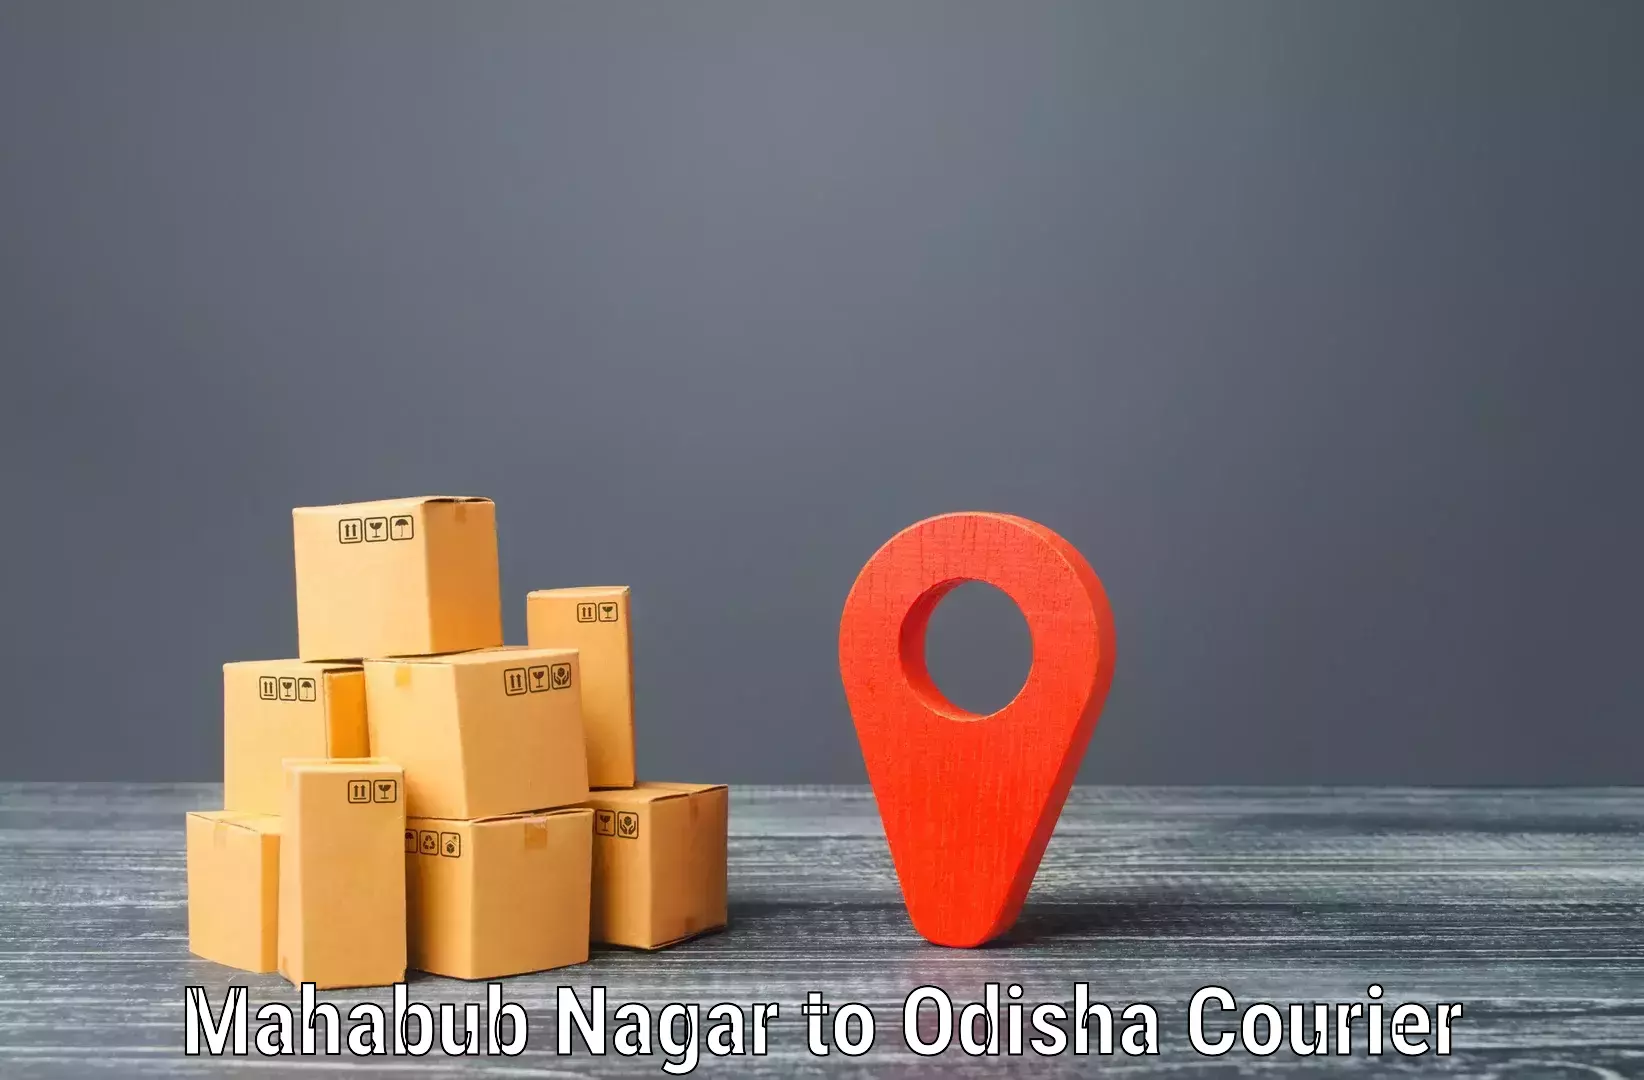 Bulk shipping discounts Mahabub Nagar to Dukura